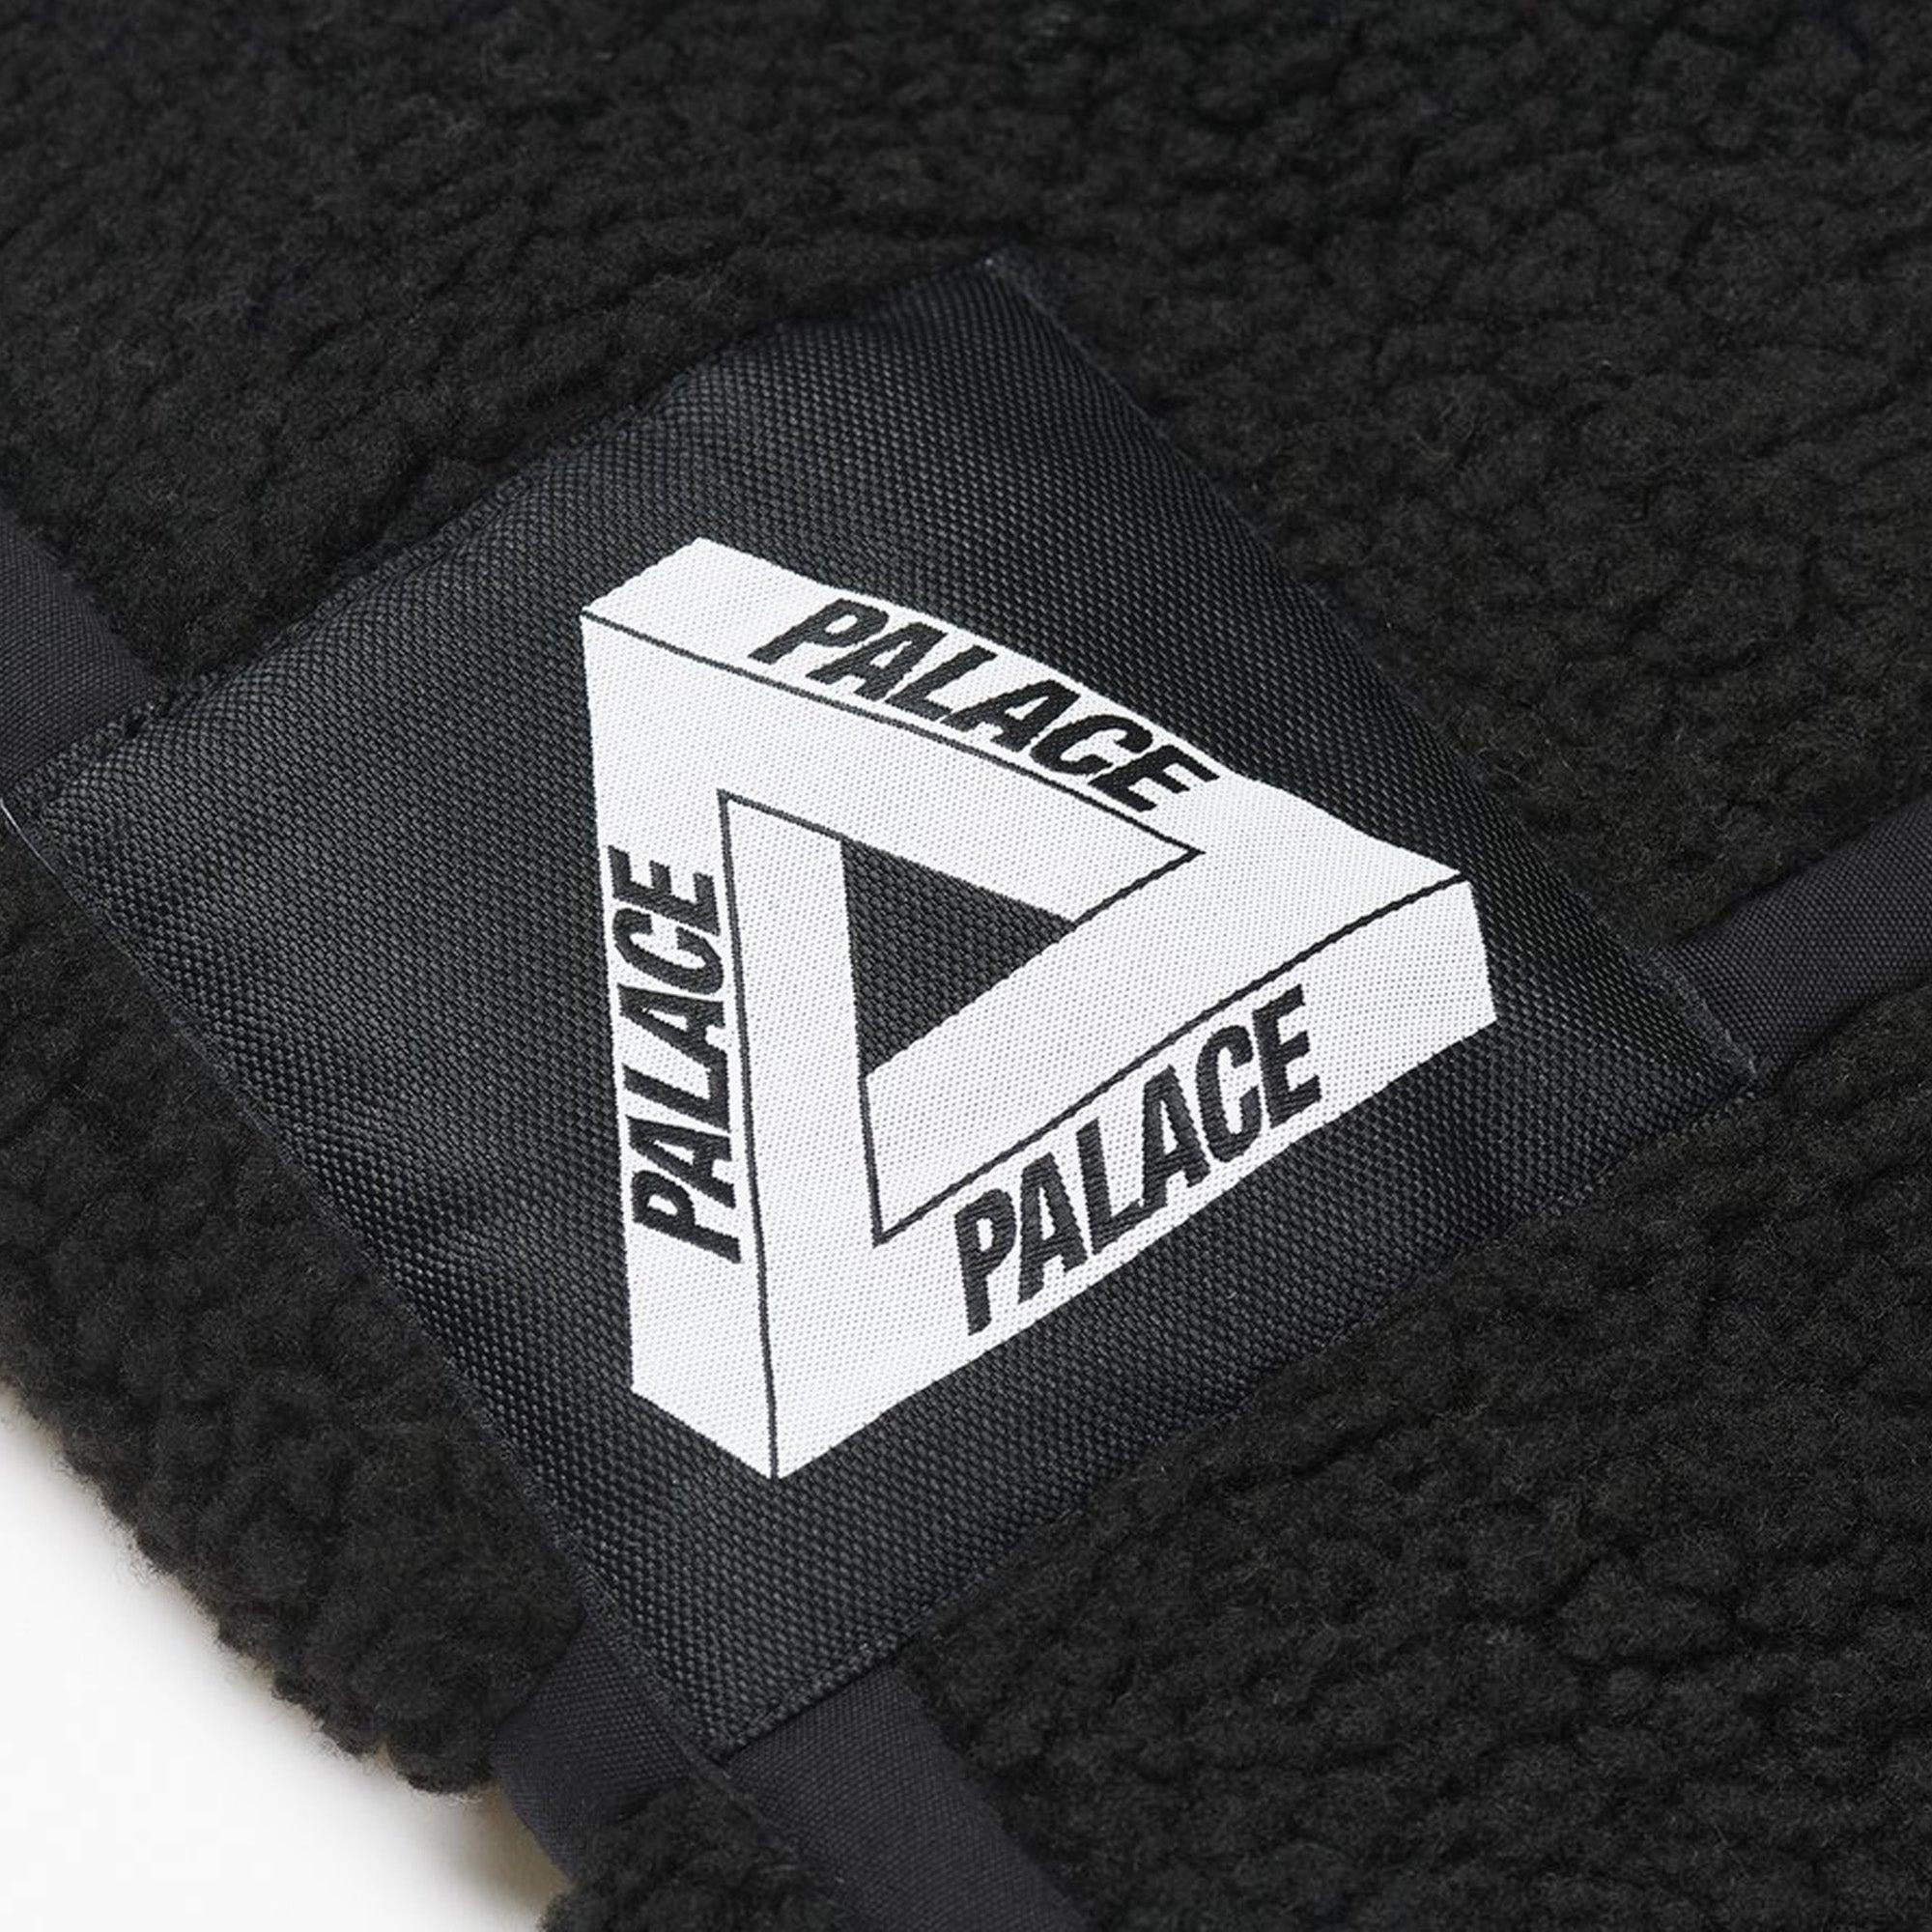 Buy Palace Palace Sherpa Flight Black Jacket Online